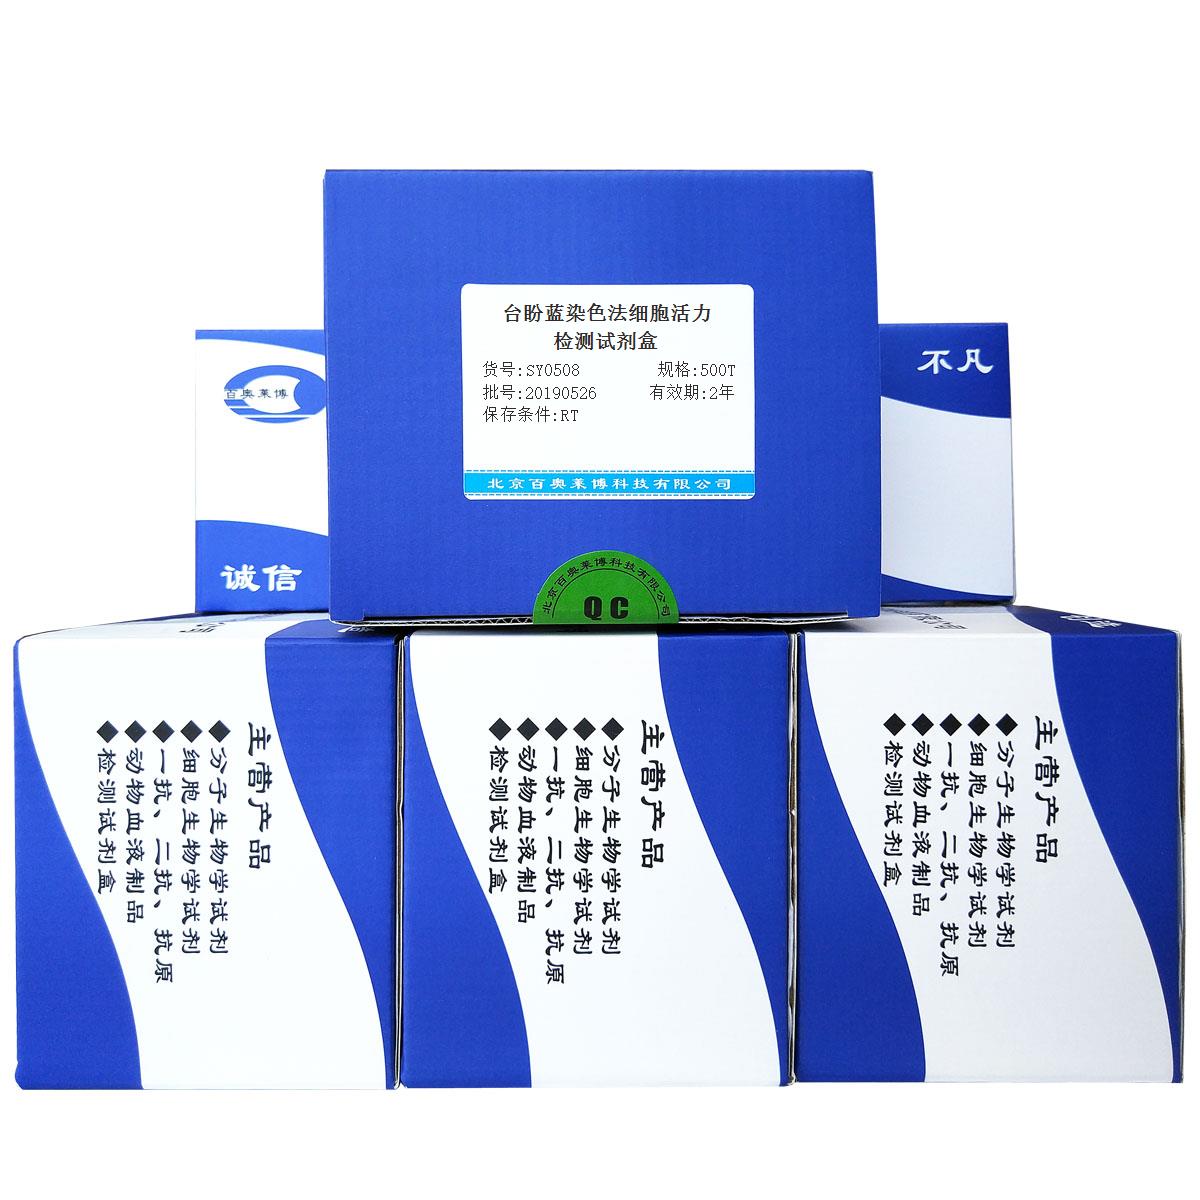 台盼蓝染色法细胞活力检测试剂盒北京价格